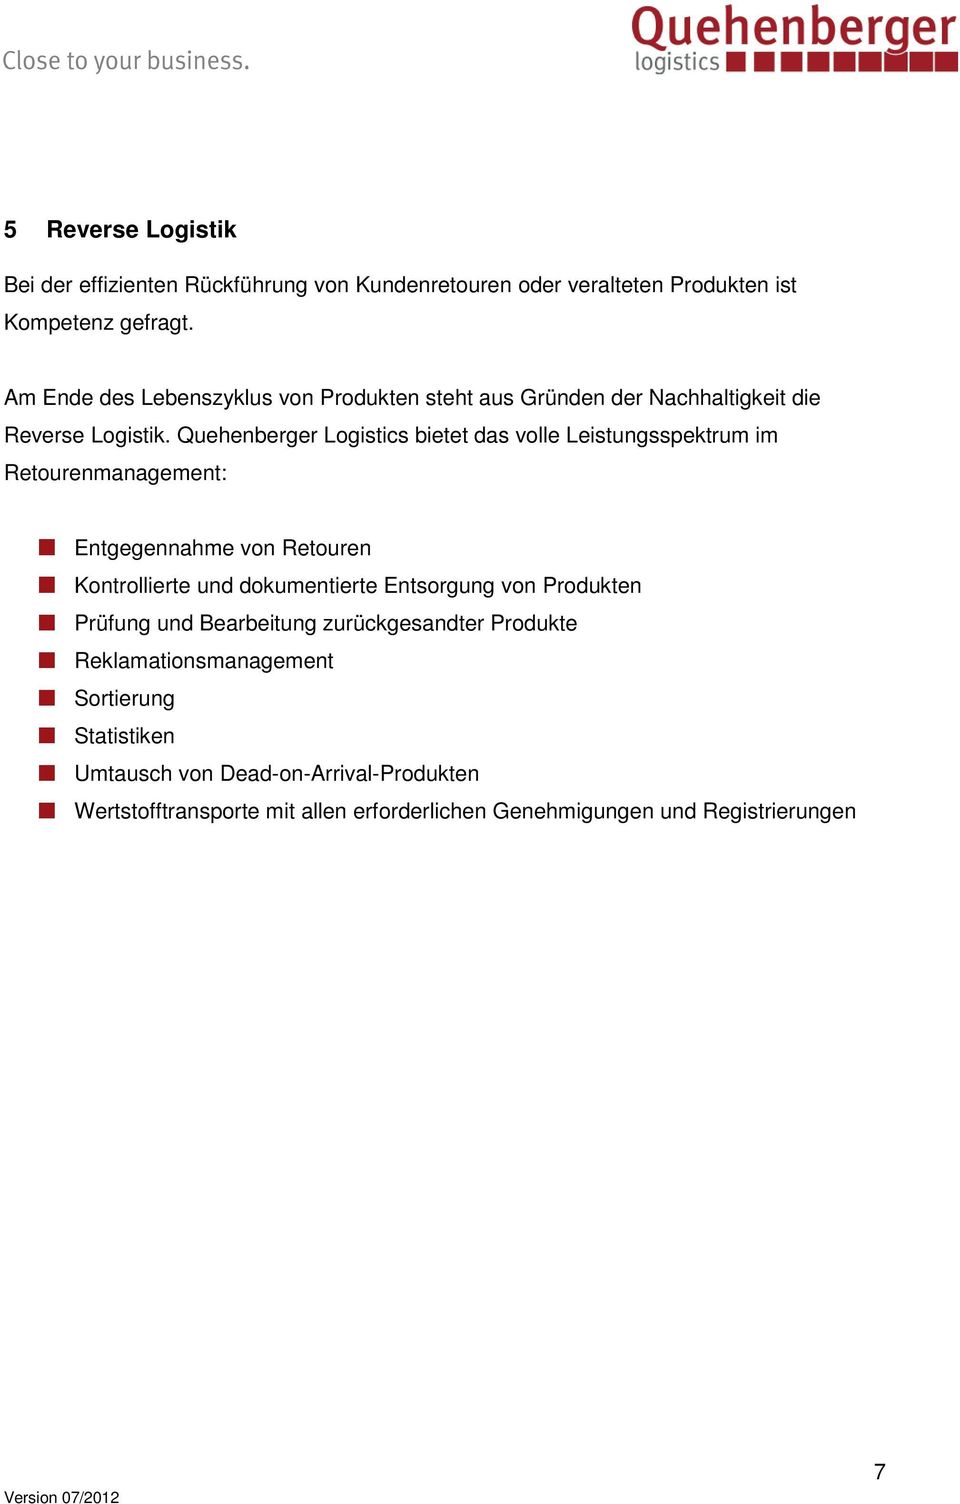 Quehenberger Logistics bietet das volle Leistungsspektrum im Retourenmanagement: Entgegennahme von Retouren Kontrollierte und dokumentierte